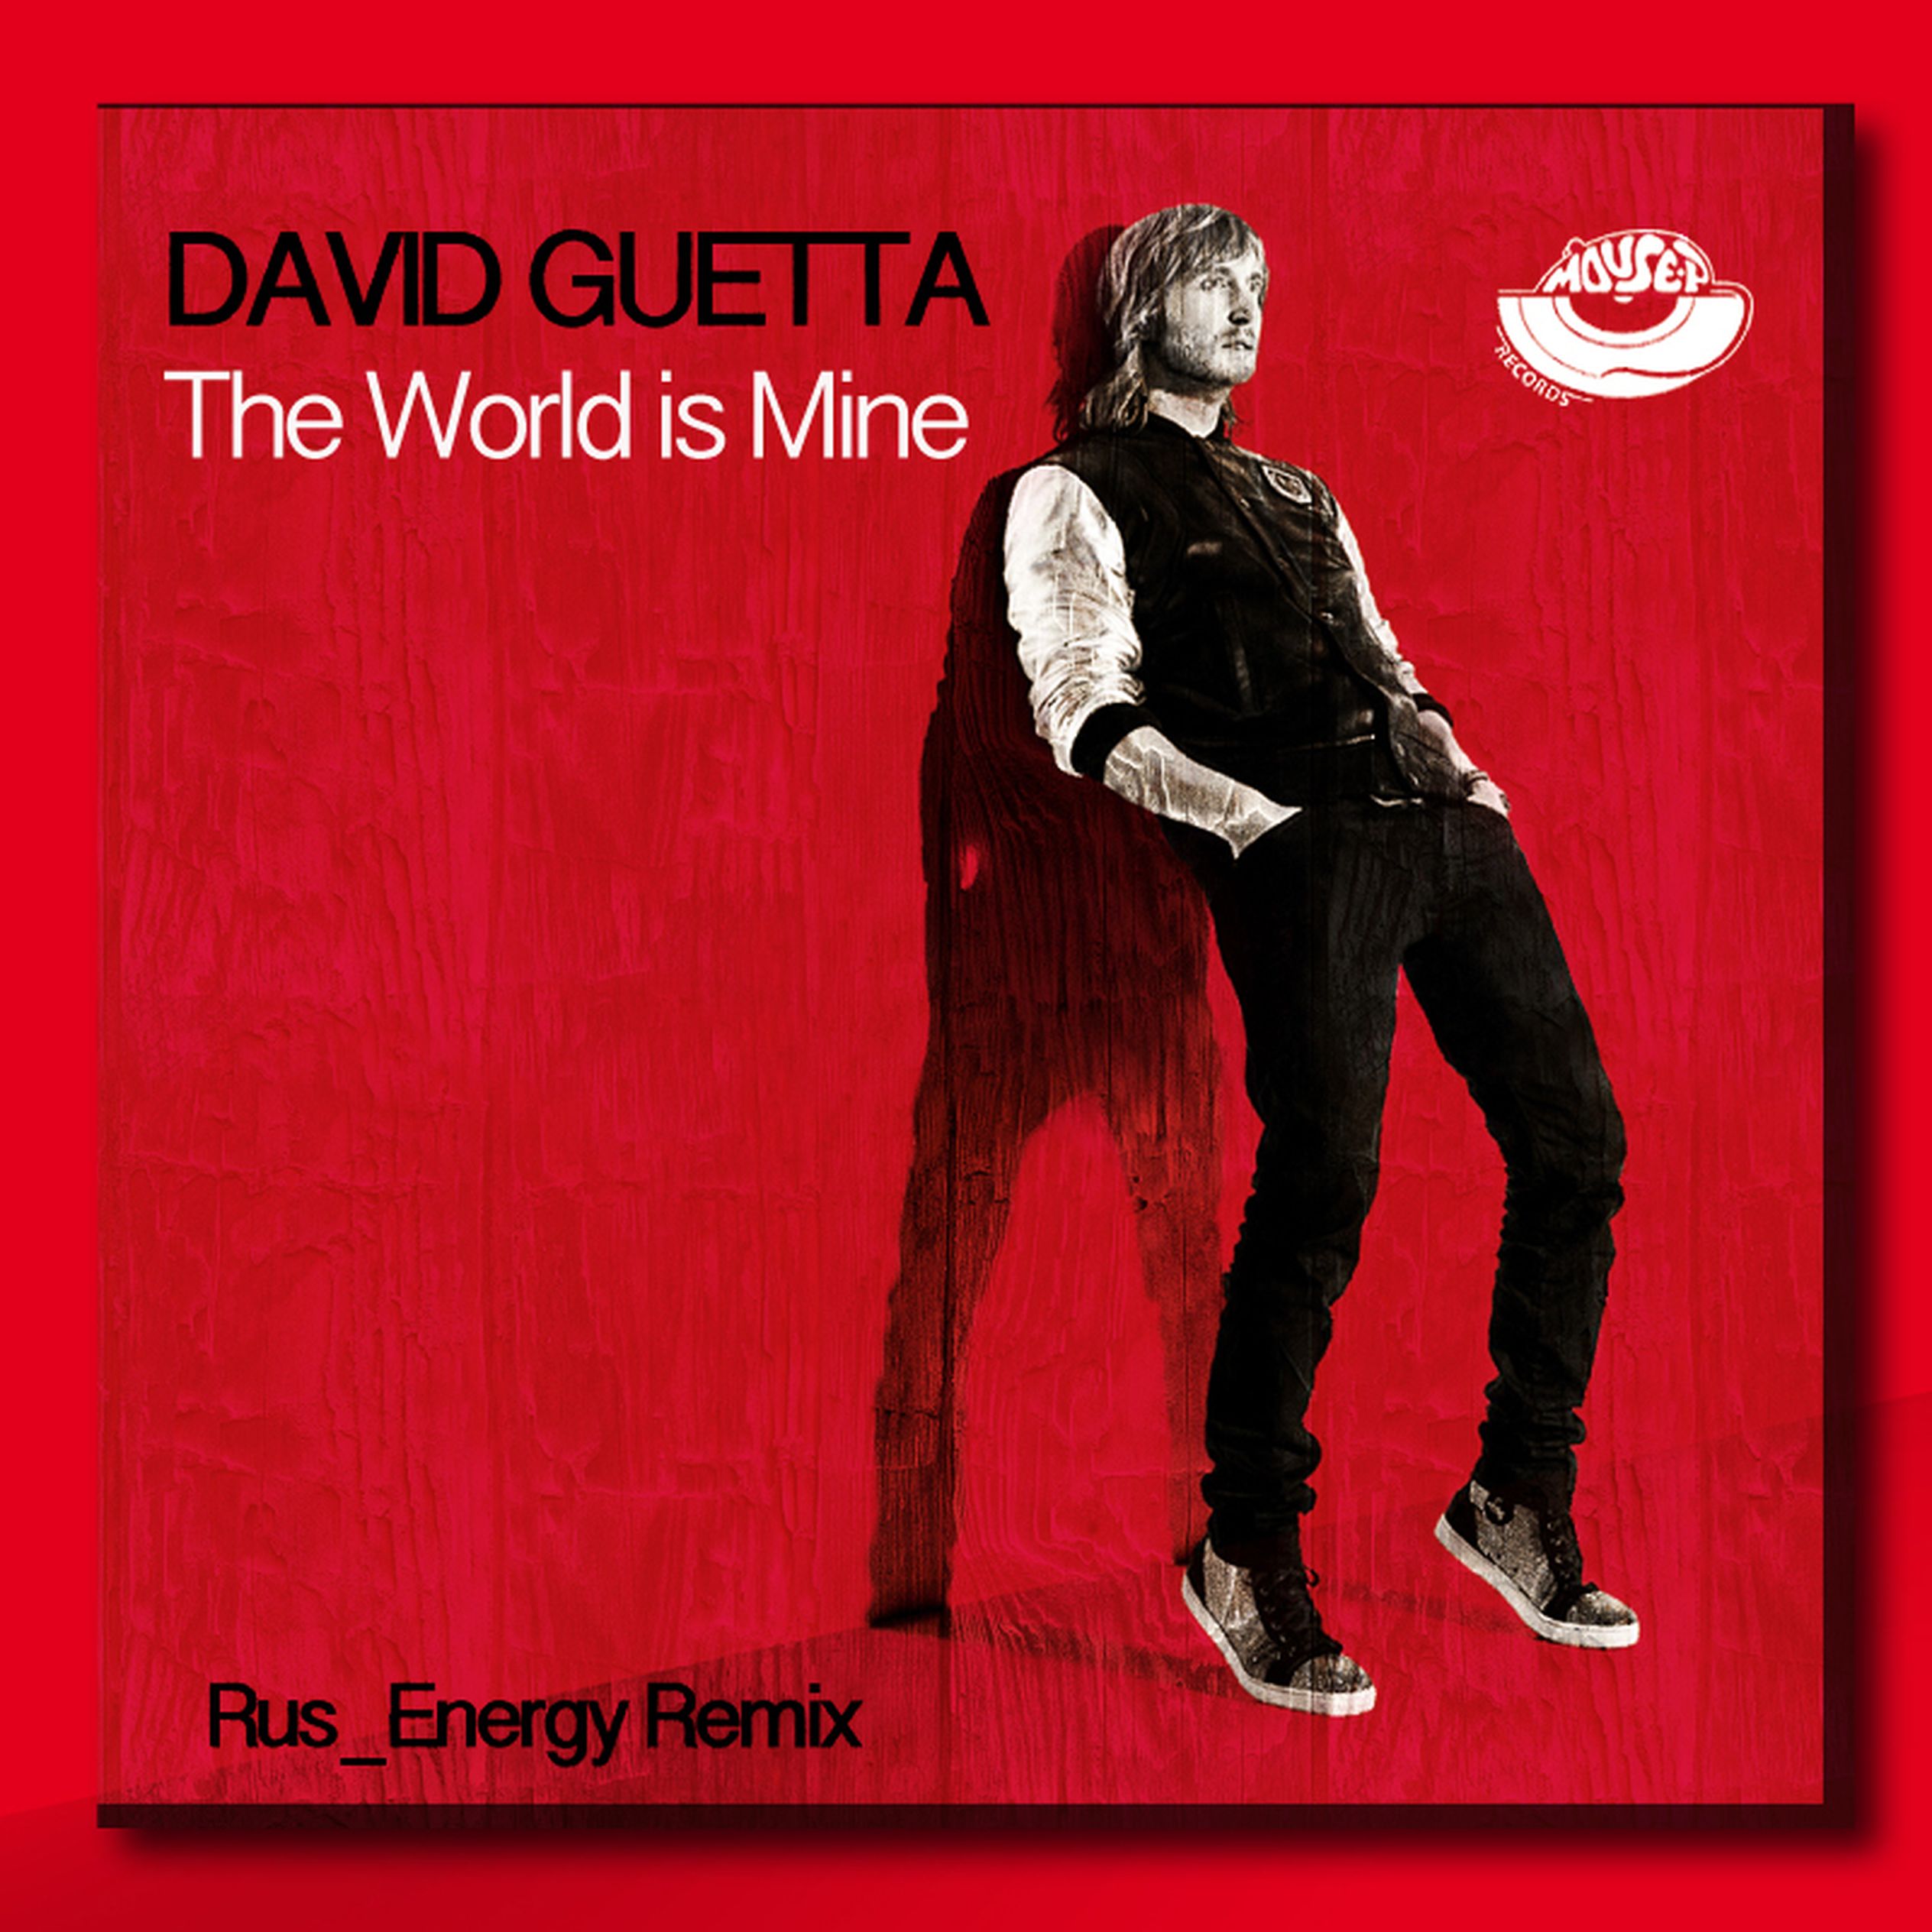 David guetta world is mine. Дэвид Гетта ворлд из майн. David Guetta the World is mine. David Guetta the World is mine обложка. The World is mine (2004) David Guetta.